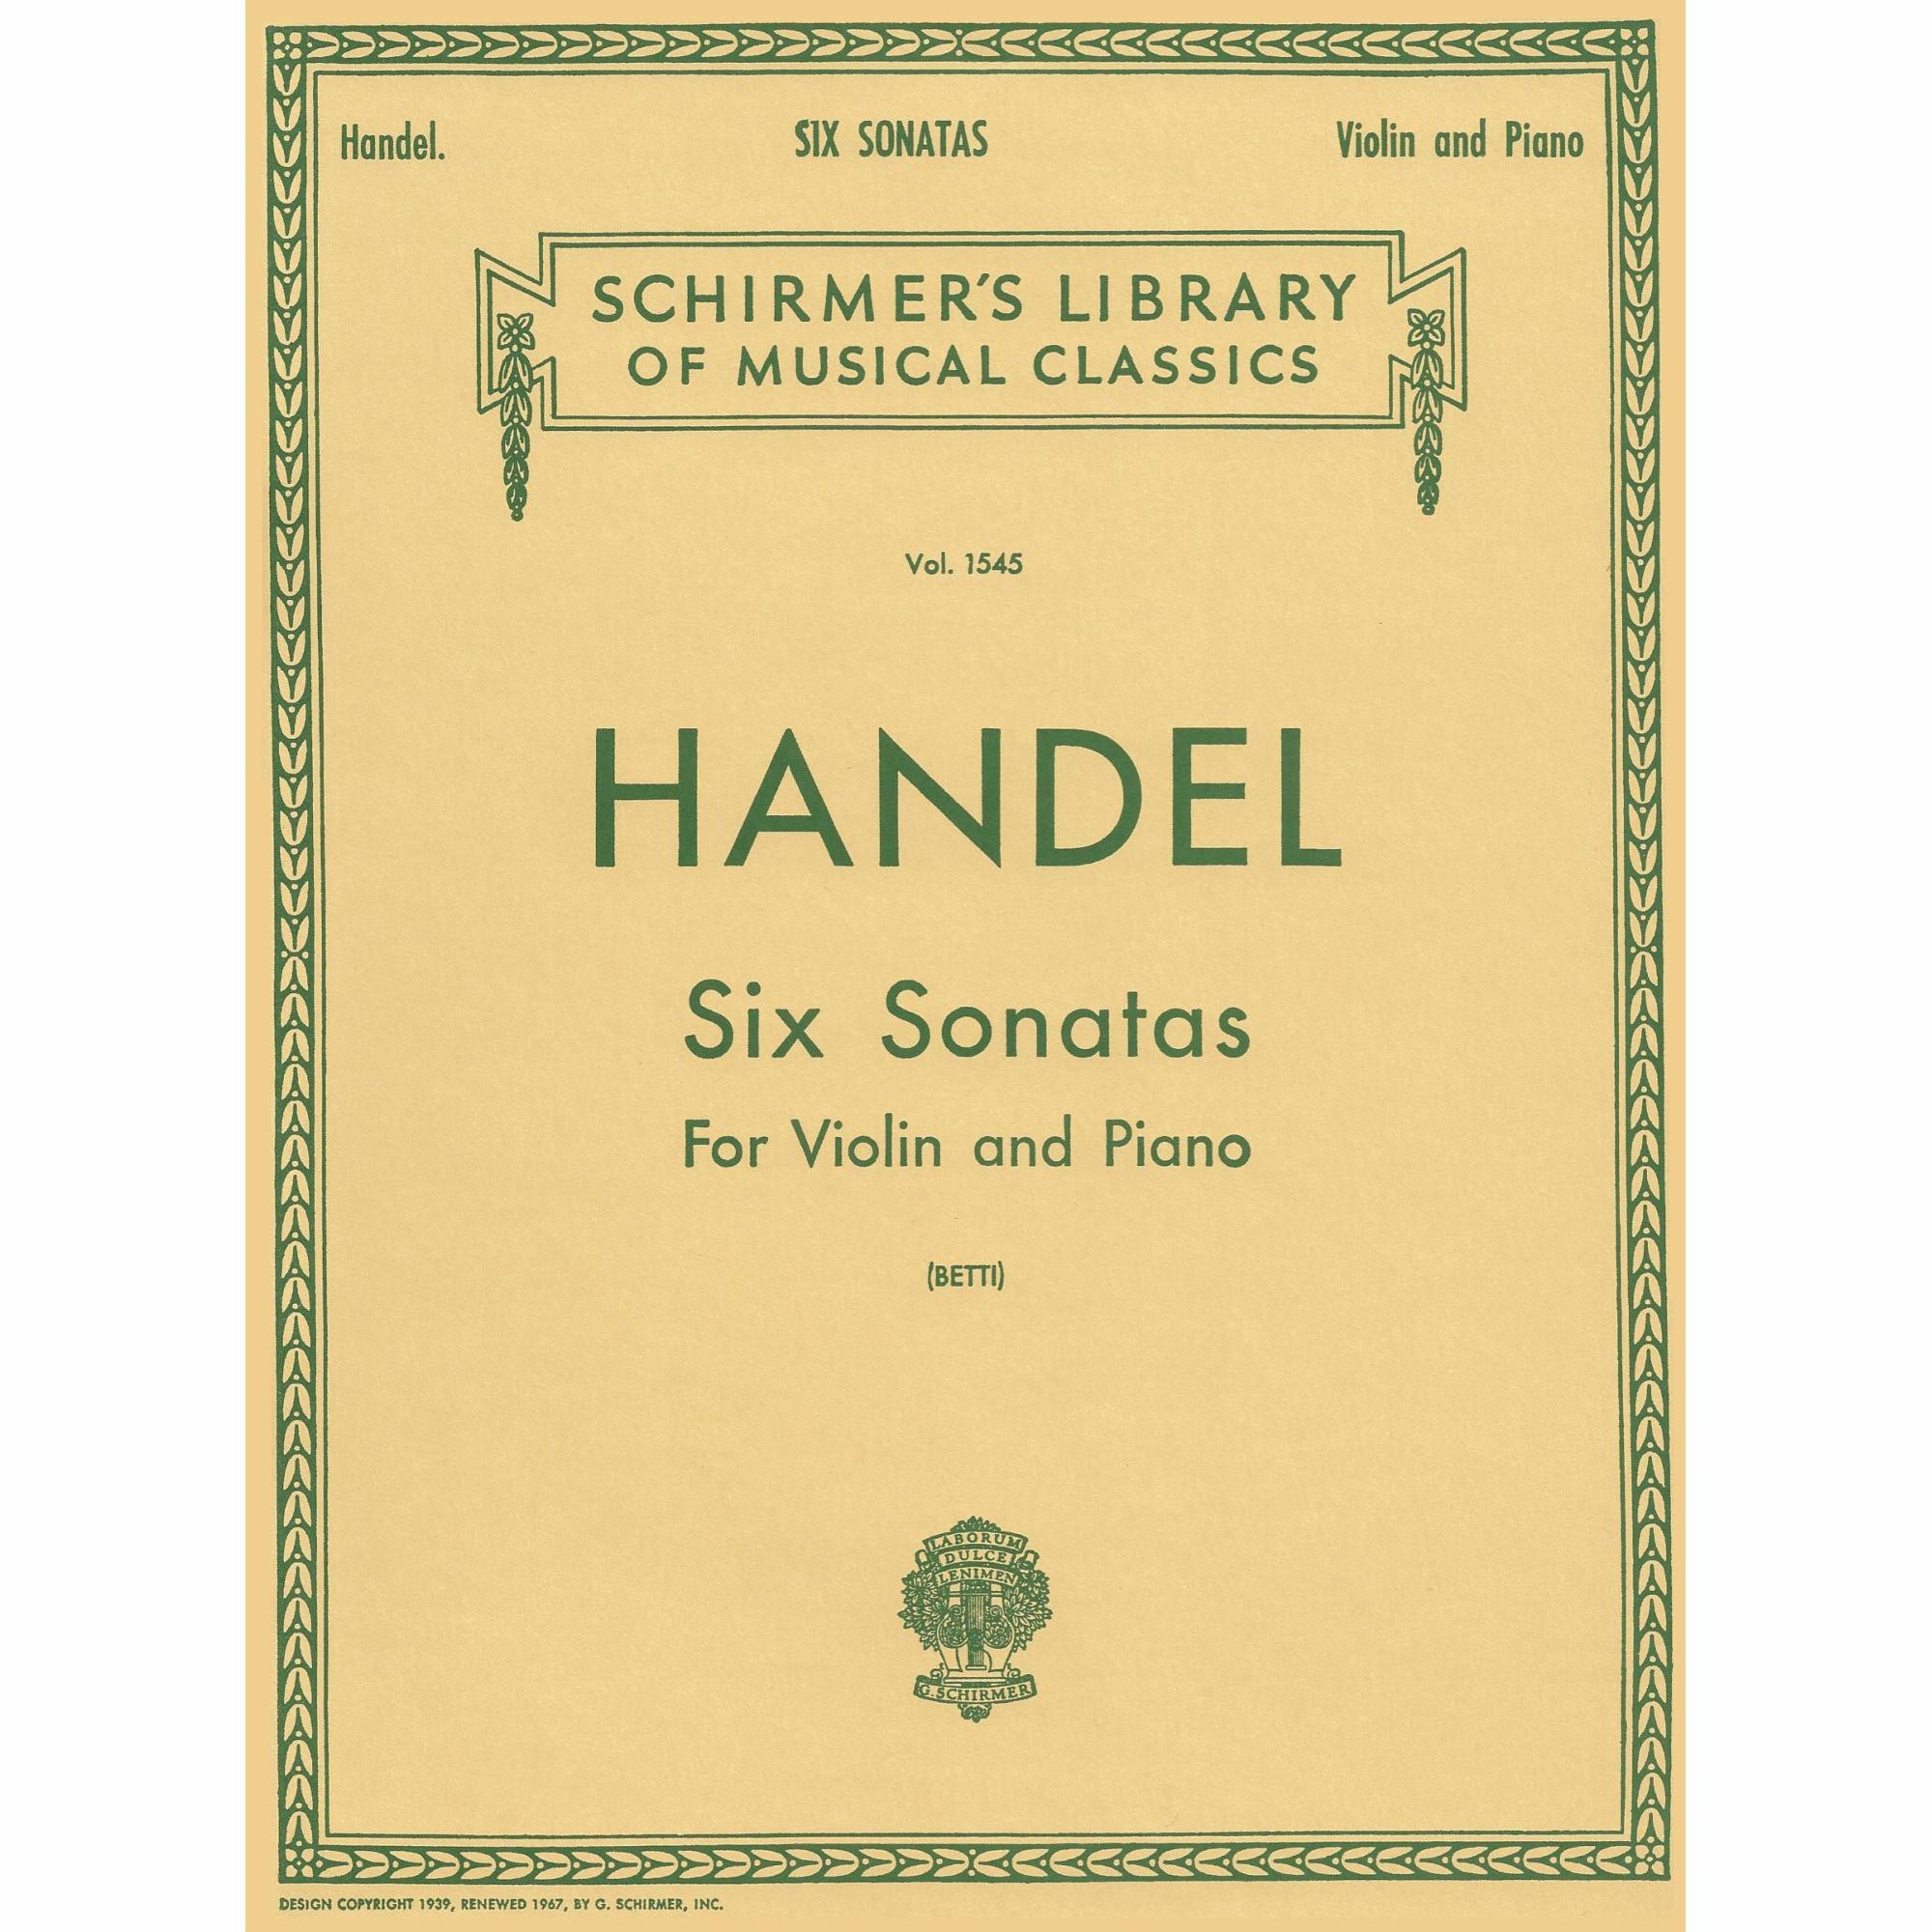 Handel -- Six Sonatas for Violin and Piano